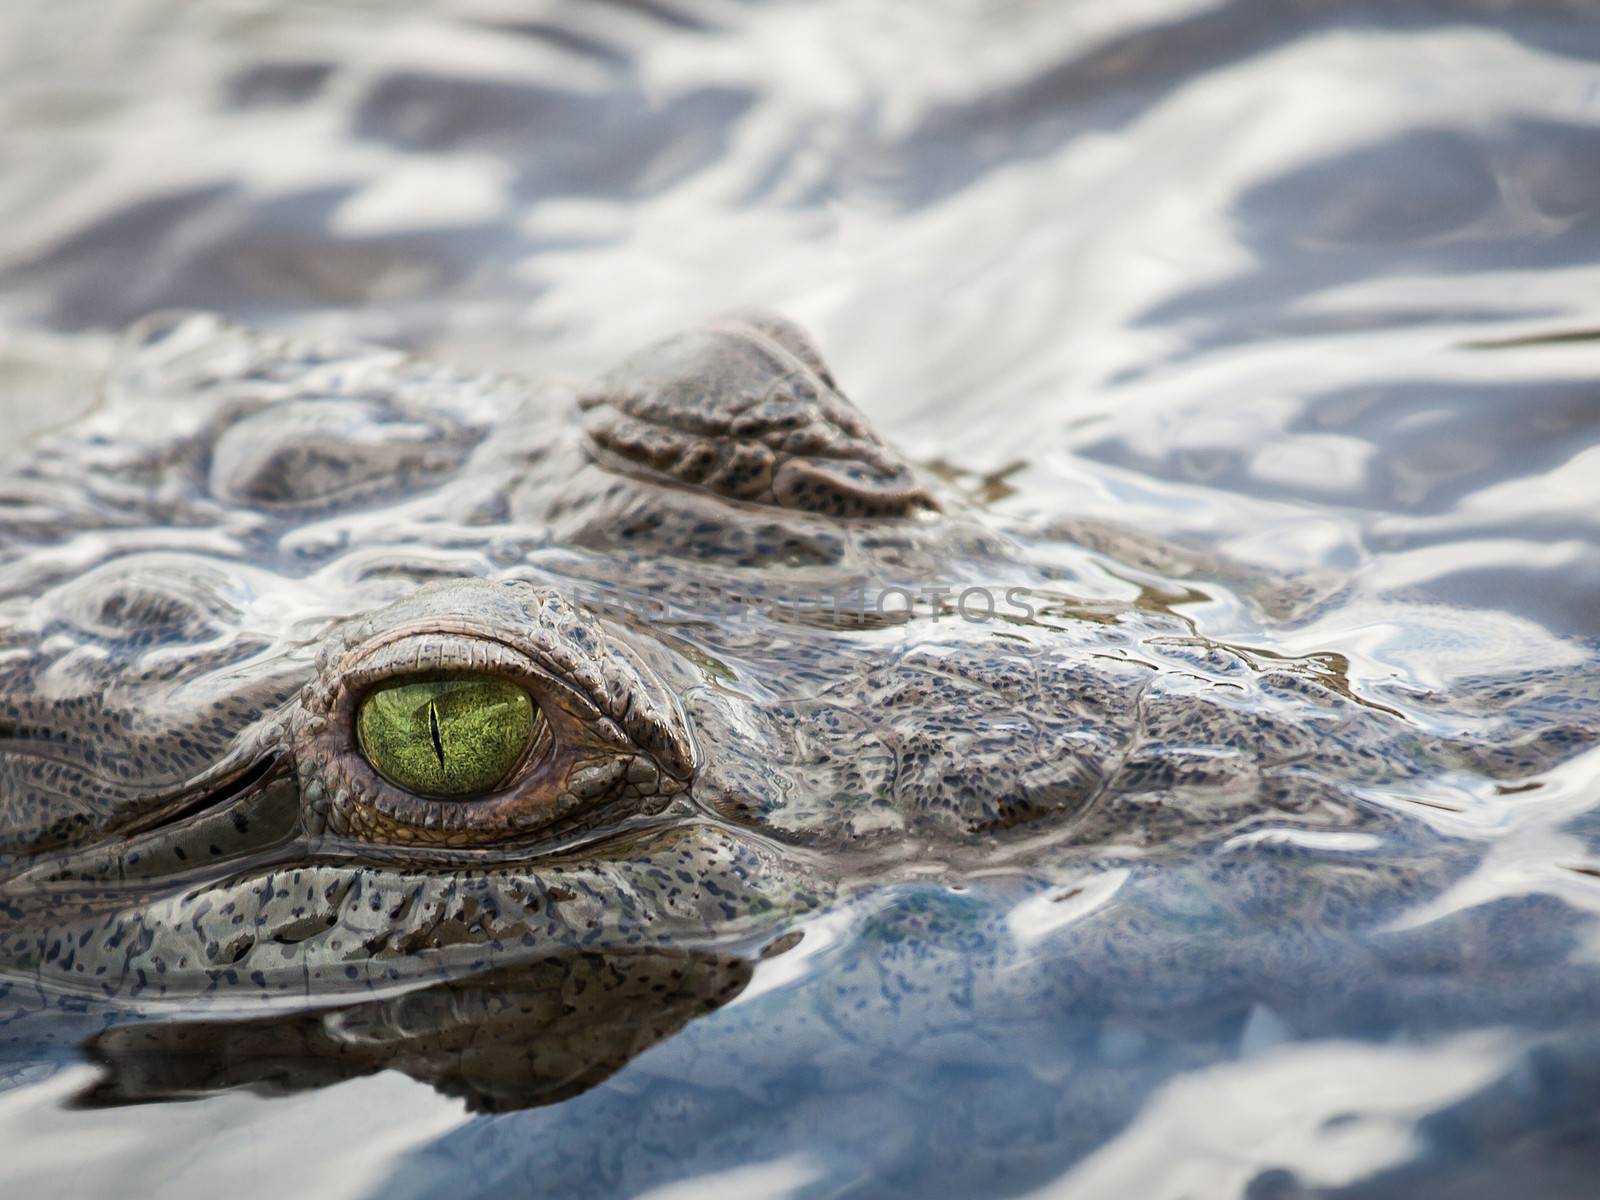 Crocodile eye by dynamicfoto